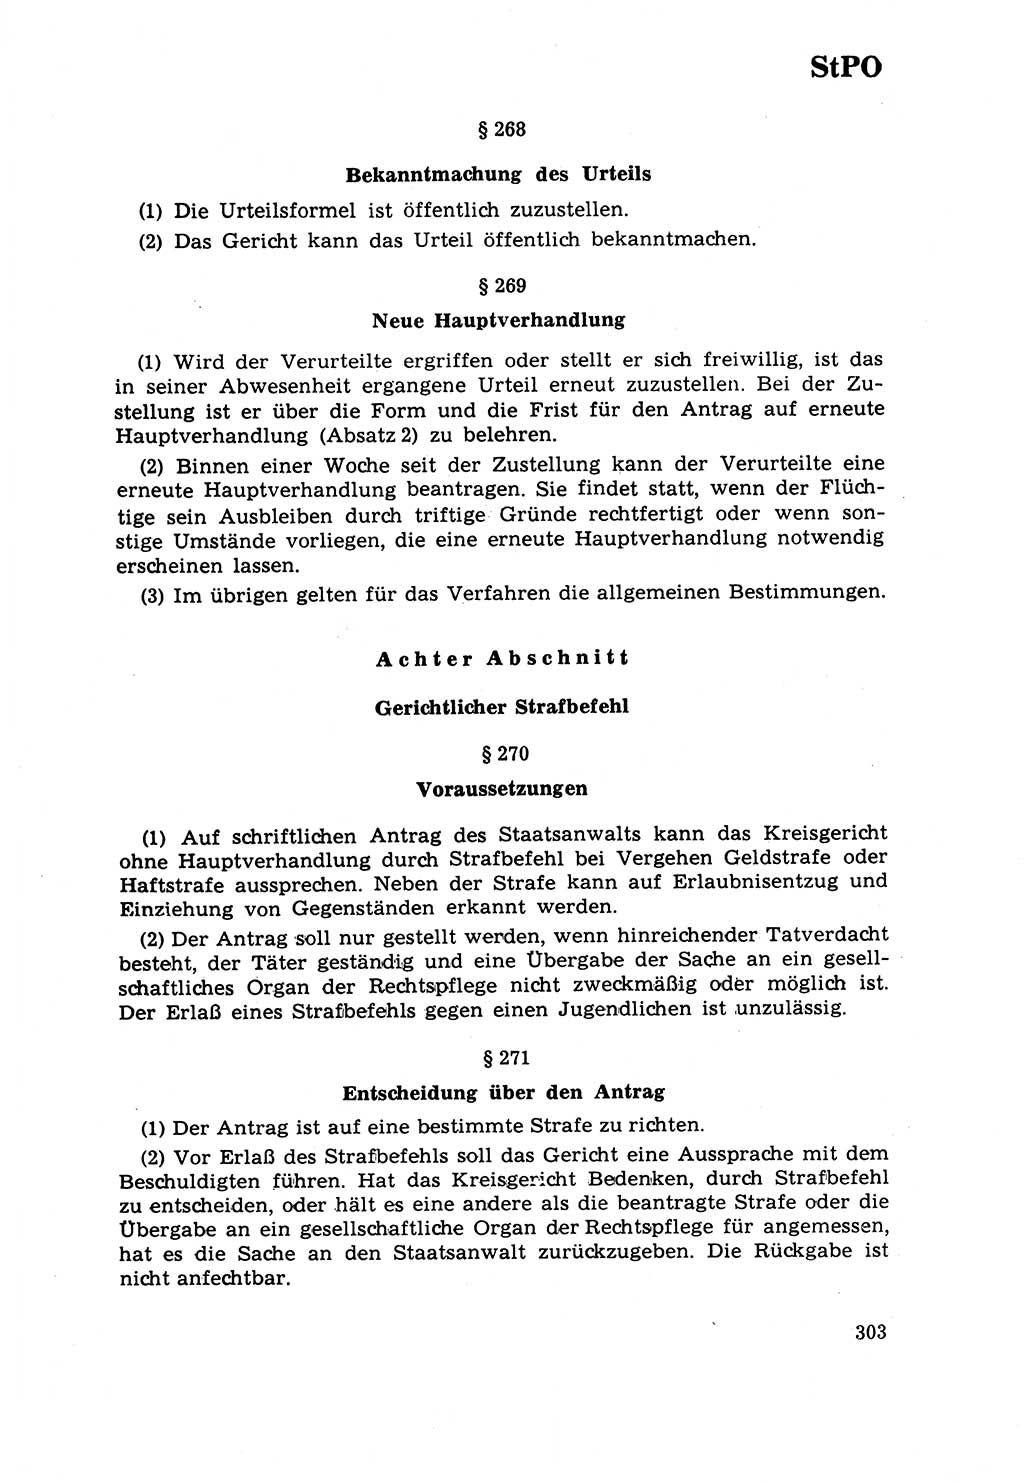 Strafrecht [Deutsche Demokratische Republik (DDR)] 1968, Seite 303 (Strafr. DDR 1968, S. 303)